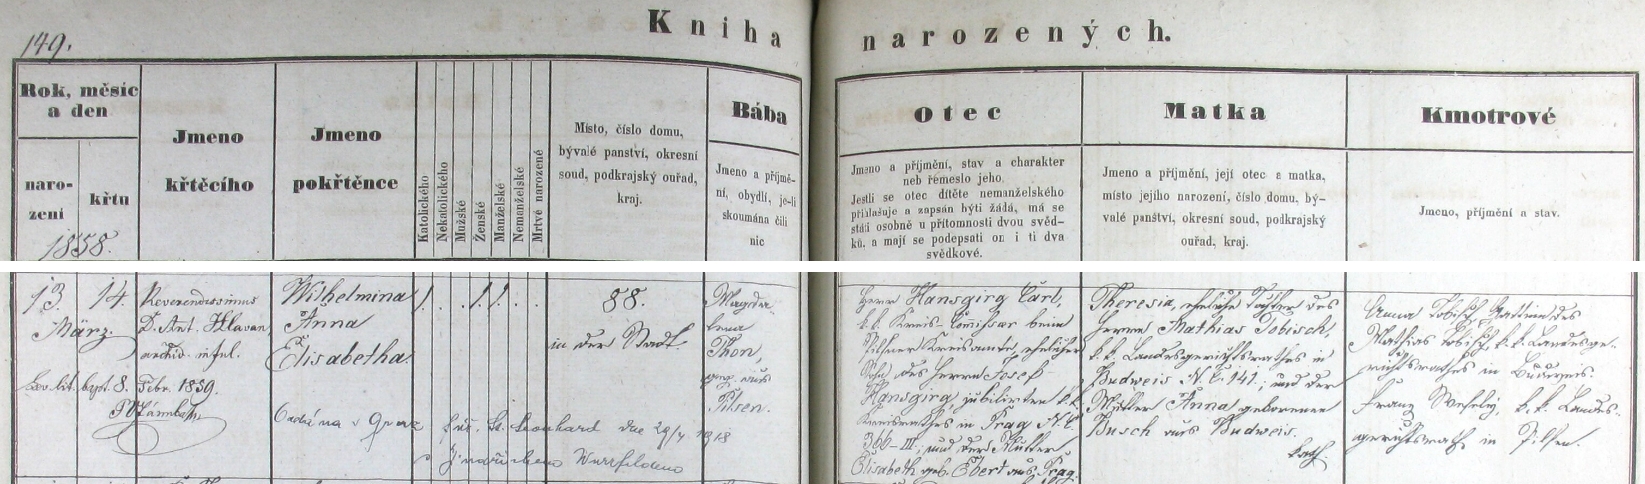 Záznam o narození dcery Wilheminy v plzeňské křestní matrice s přípisem o její druhé svatbě